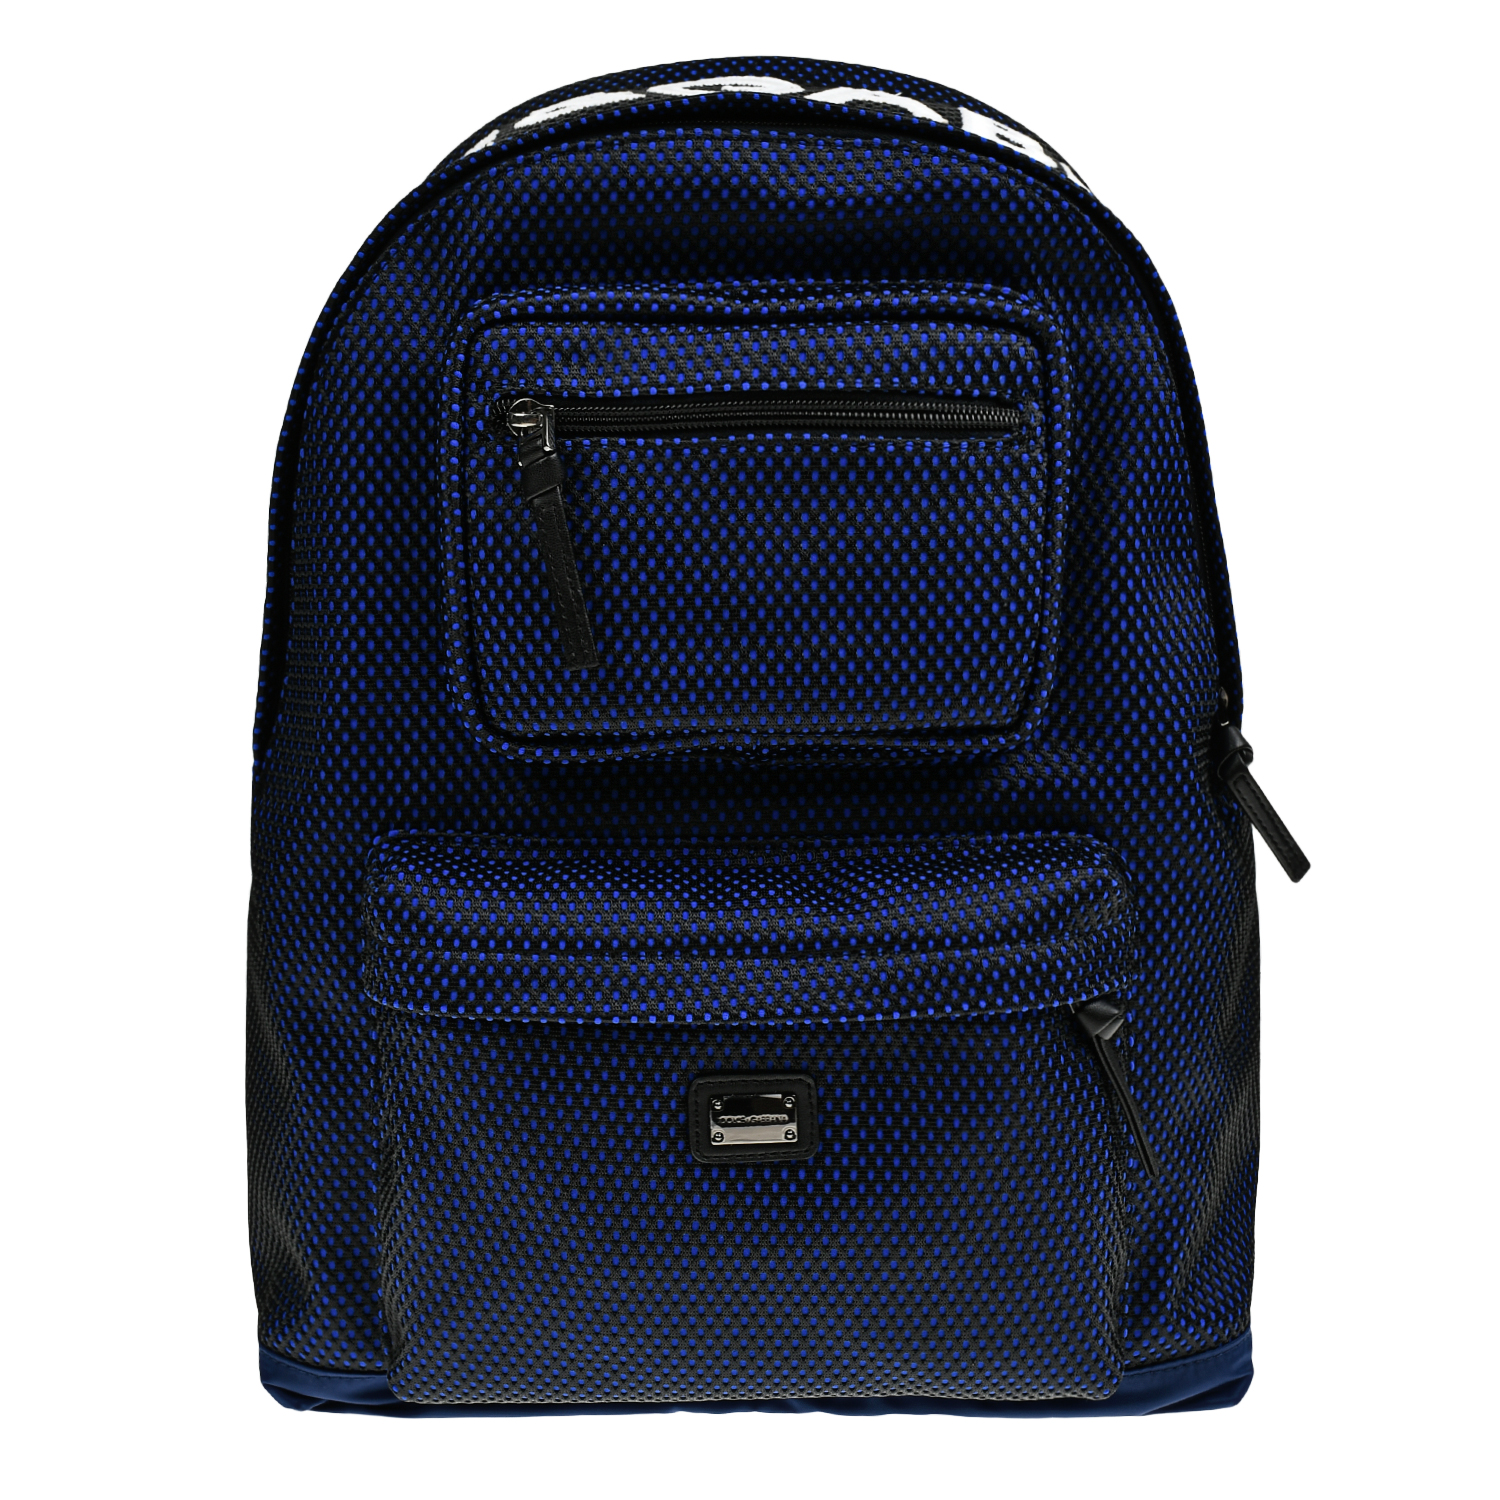 Рюкзак с накладными карманами, синий Dolce&Gabbana, размер unica